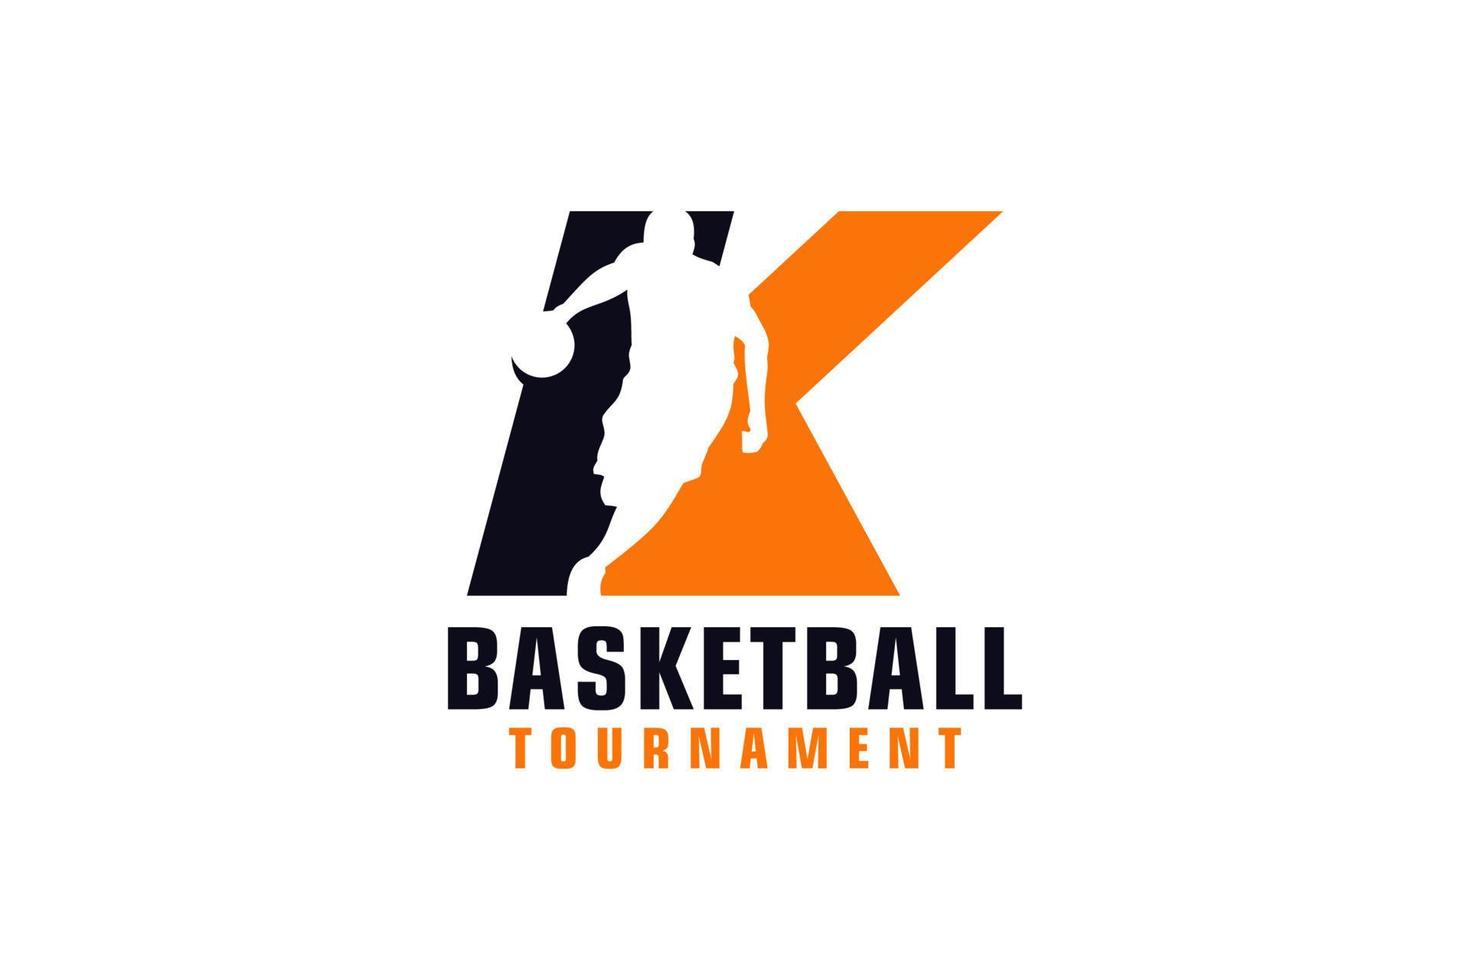 letra k con diseño de logotipo de baloncesto. elementos de plantilla de diseño vectorial para equipo deportivo o identidad corporativa. vector